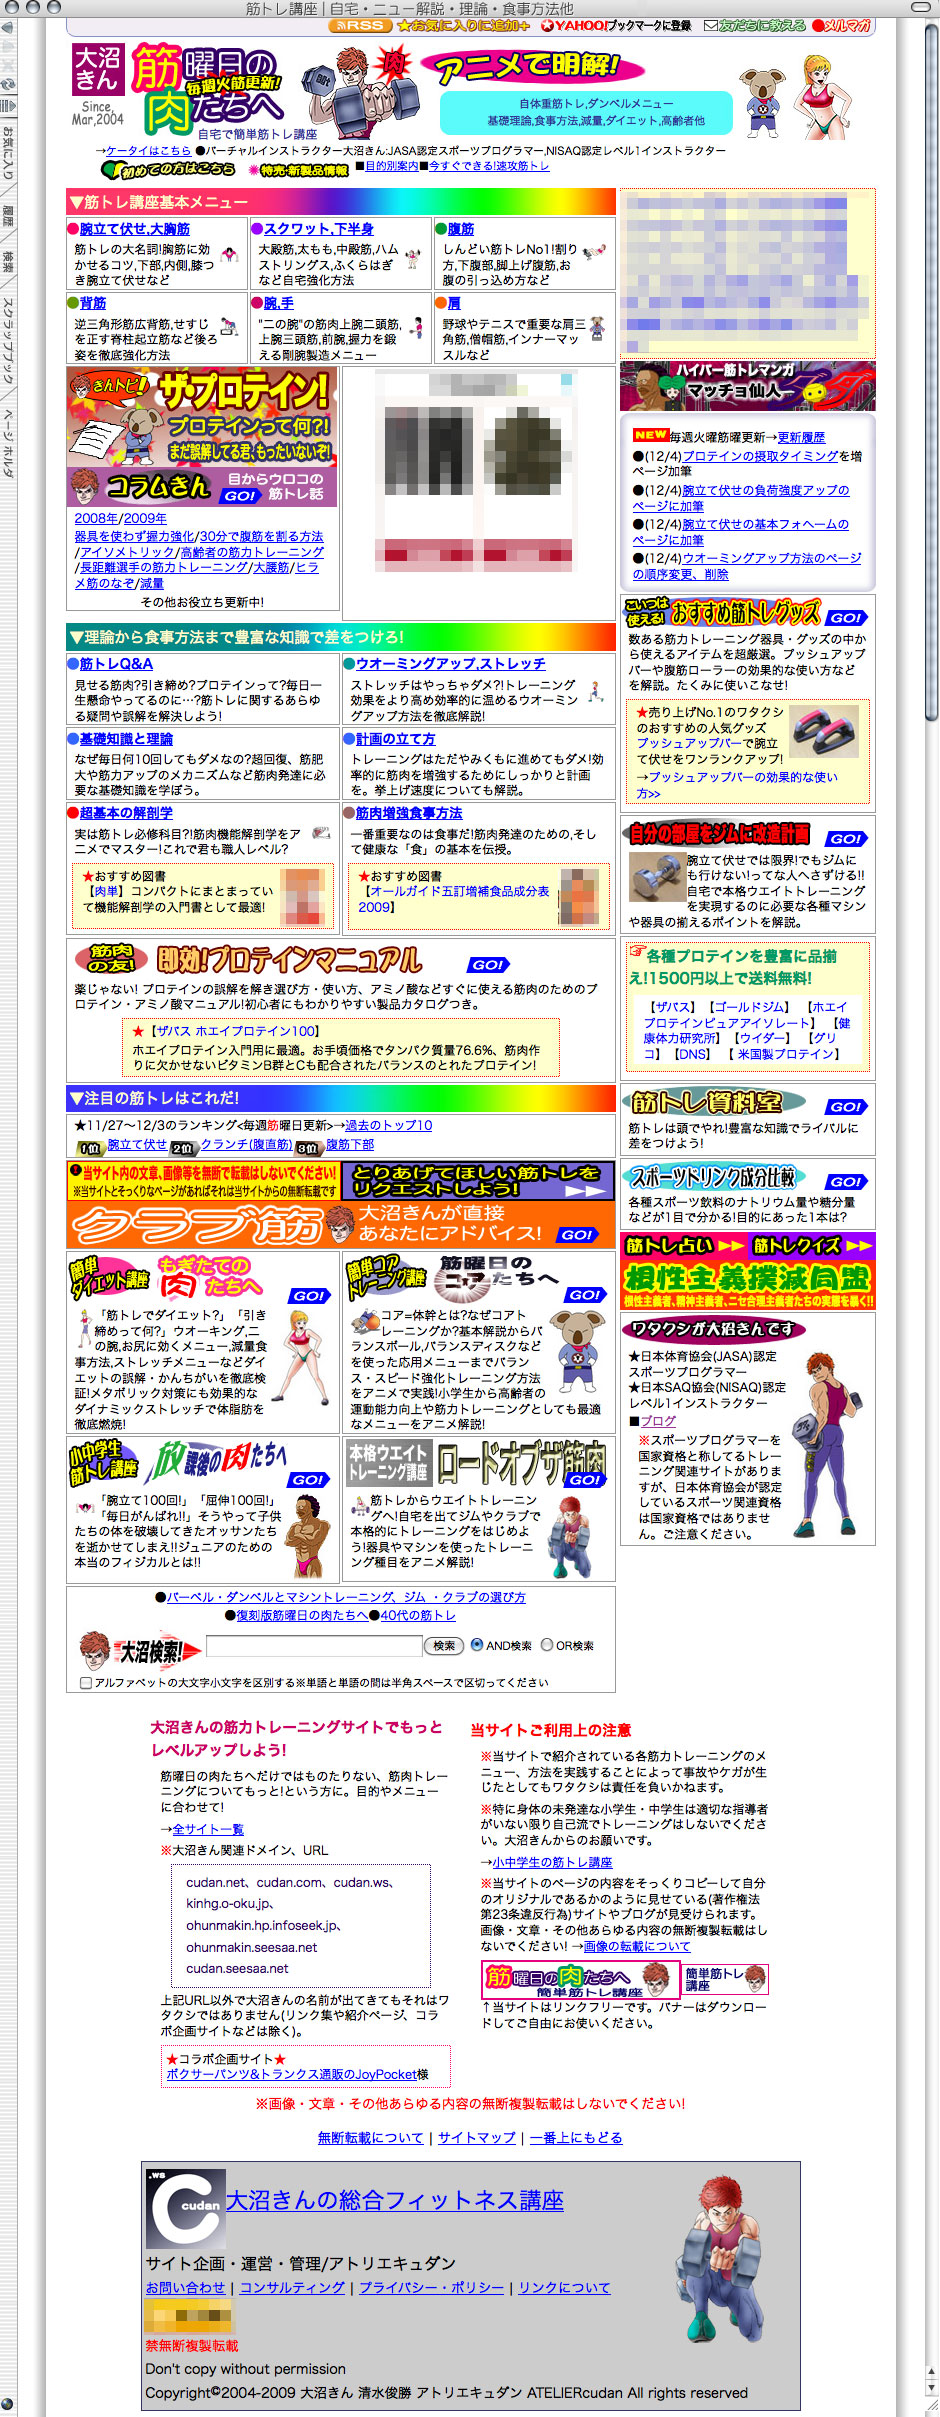 2009年11月トップページ